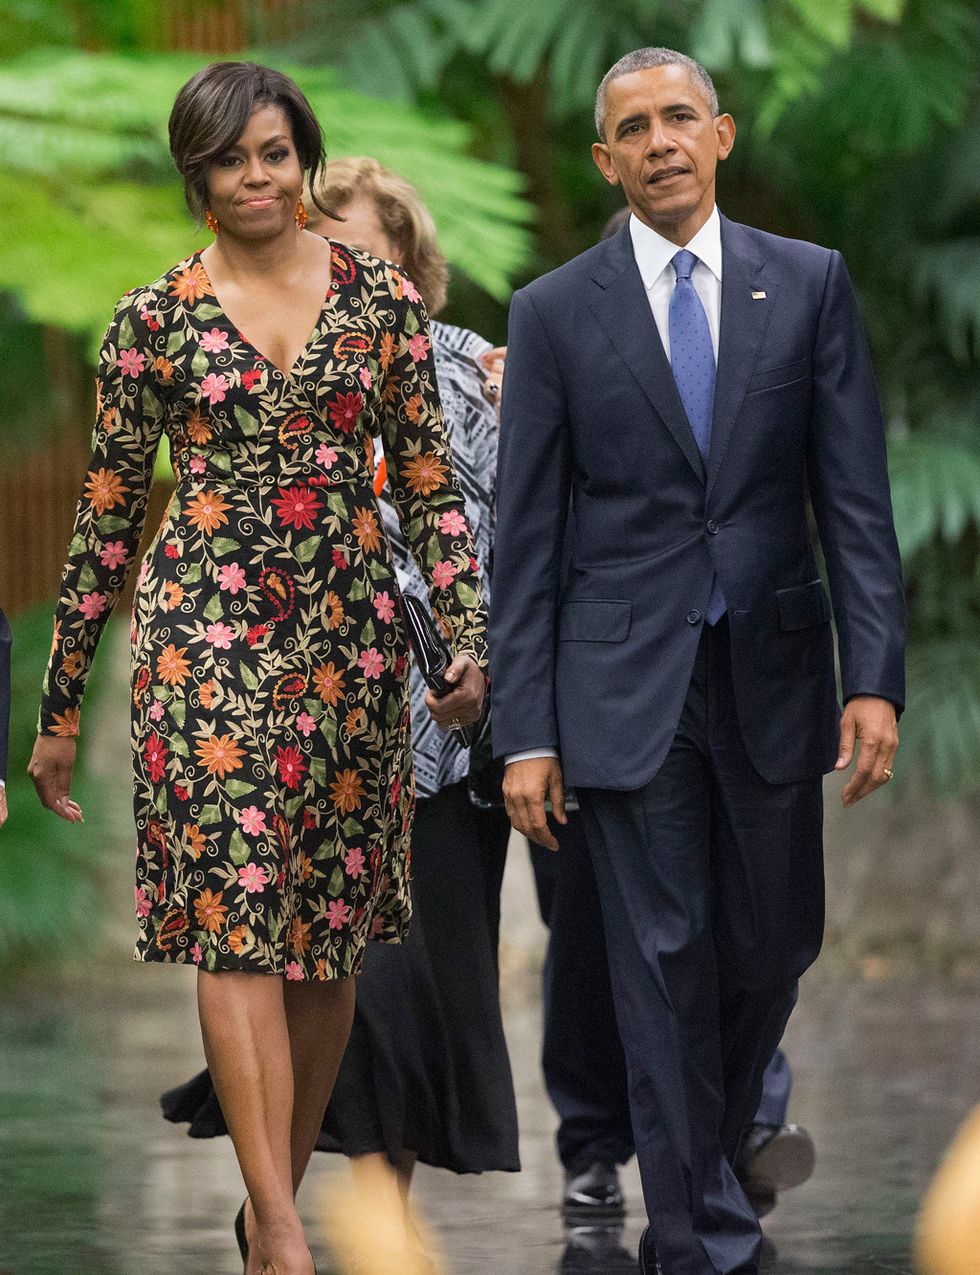 <p>En su segundo día en Cuba, <strong>Michelle Obama</strong> también ha optado por las flores pero en esta ocasión en un vestido de tonos más oscuros y manga larga. La primera dama de EEUU eligió unos favorecedores pendientes 'racimo' naranjas.</p>